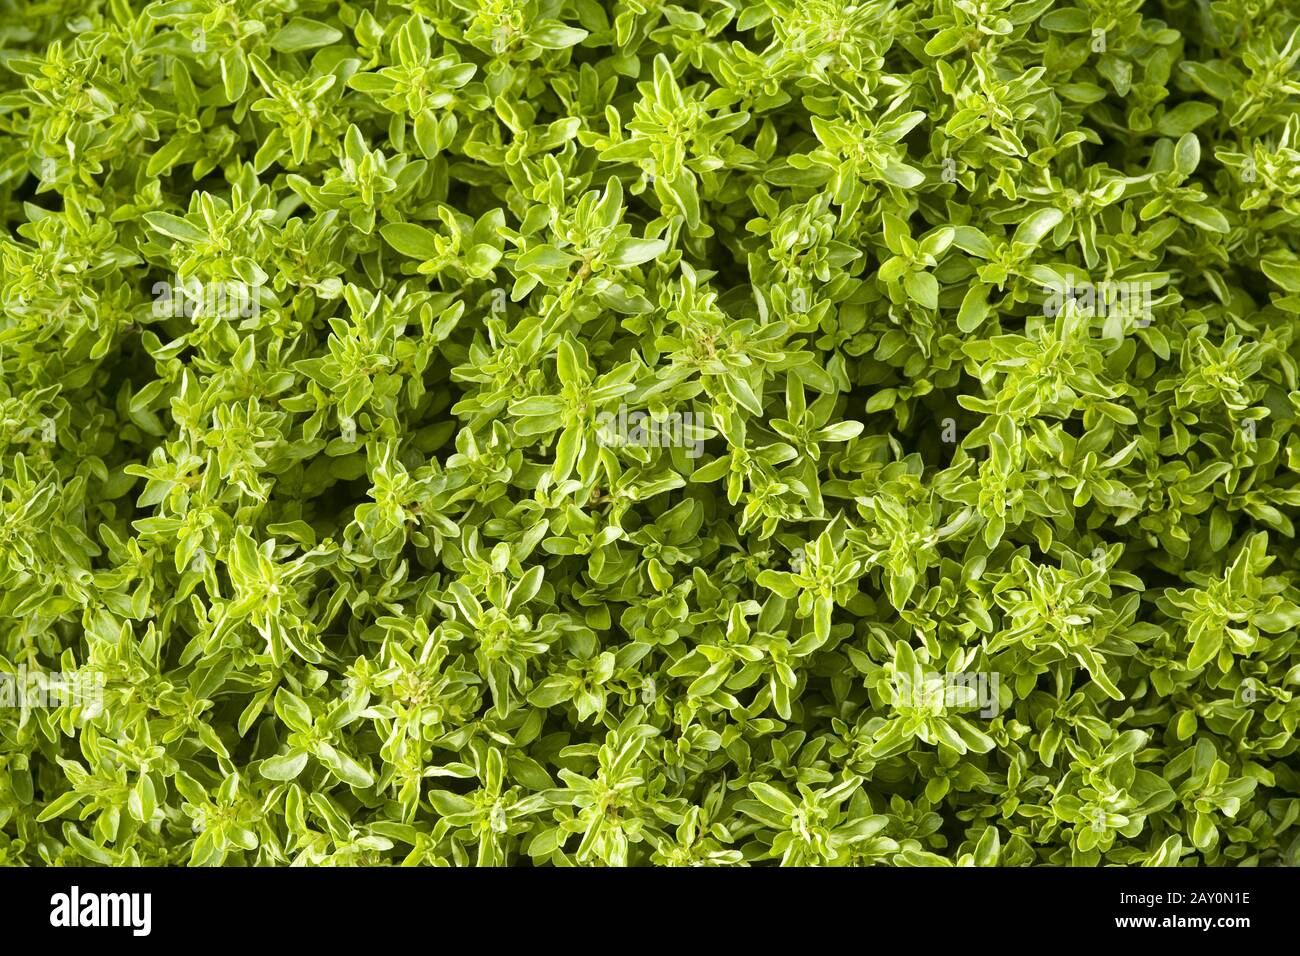 Oregano staple (Origanum vulgare var.compactum) * Oregano (Origanum vulgare var.compactum) Stock Photo